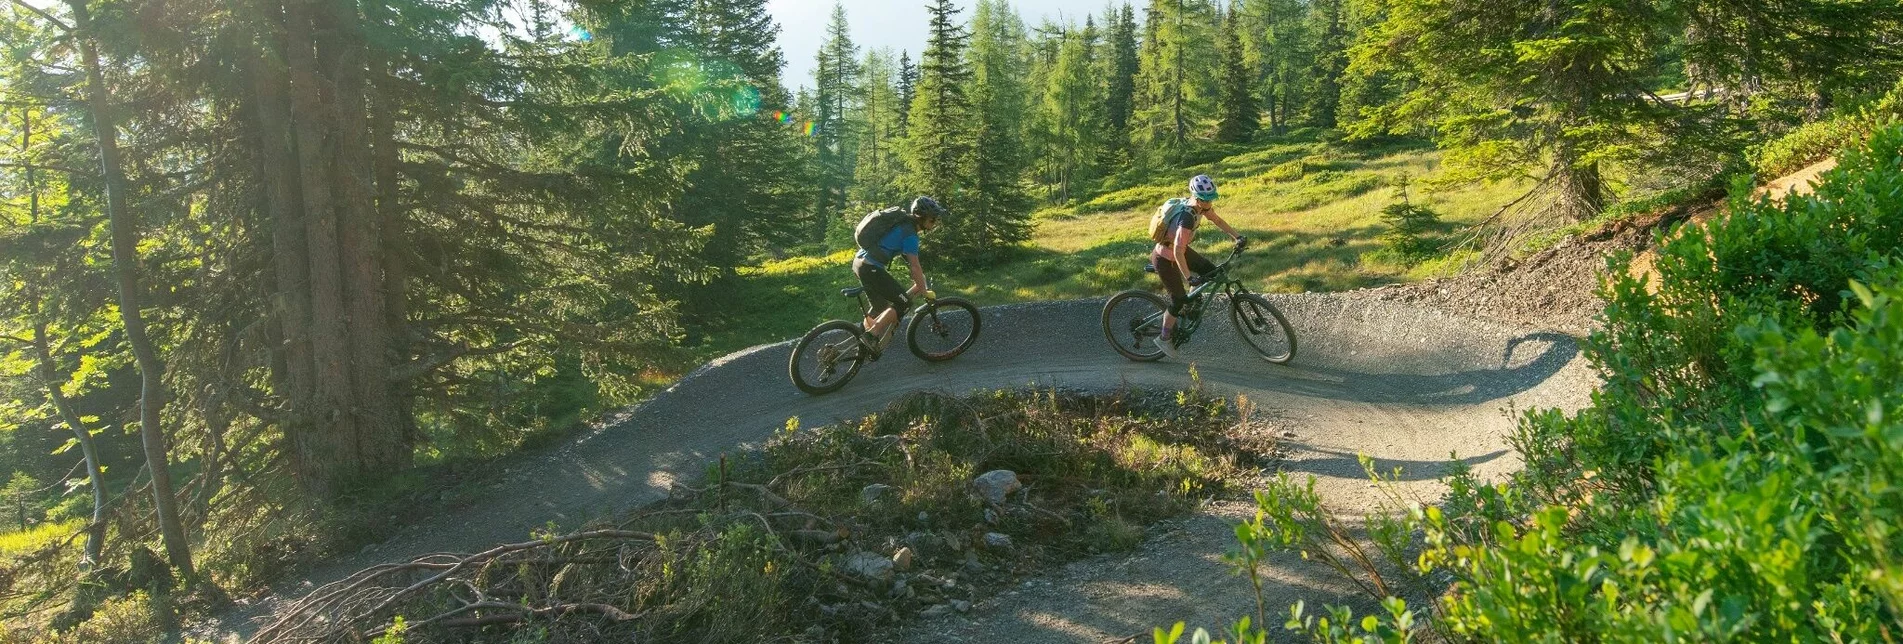 Mountain Biking Uphill Flow Trail - Touren-Impression #1 | © Erlebnisregion Schladming-Dachstein